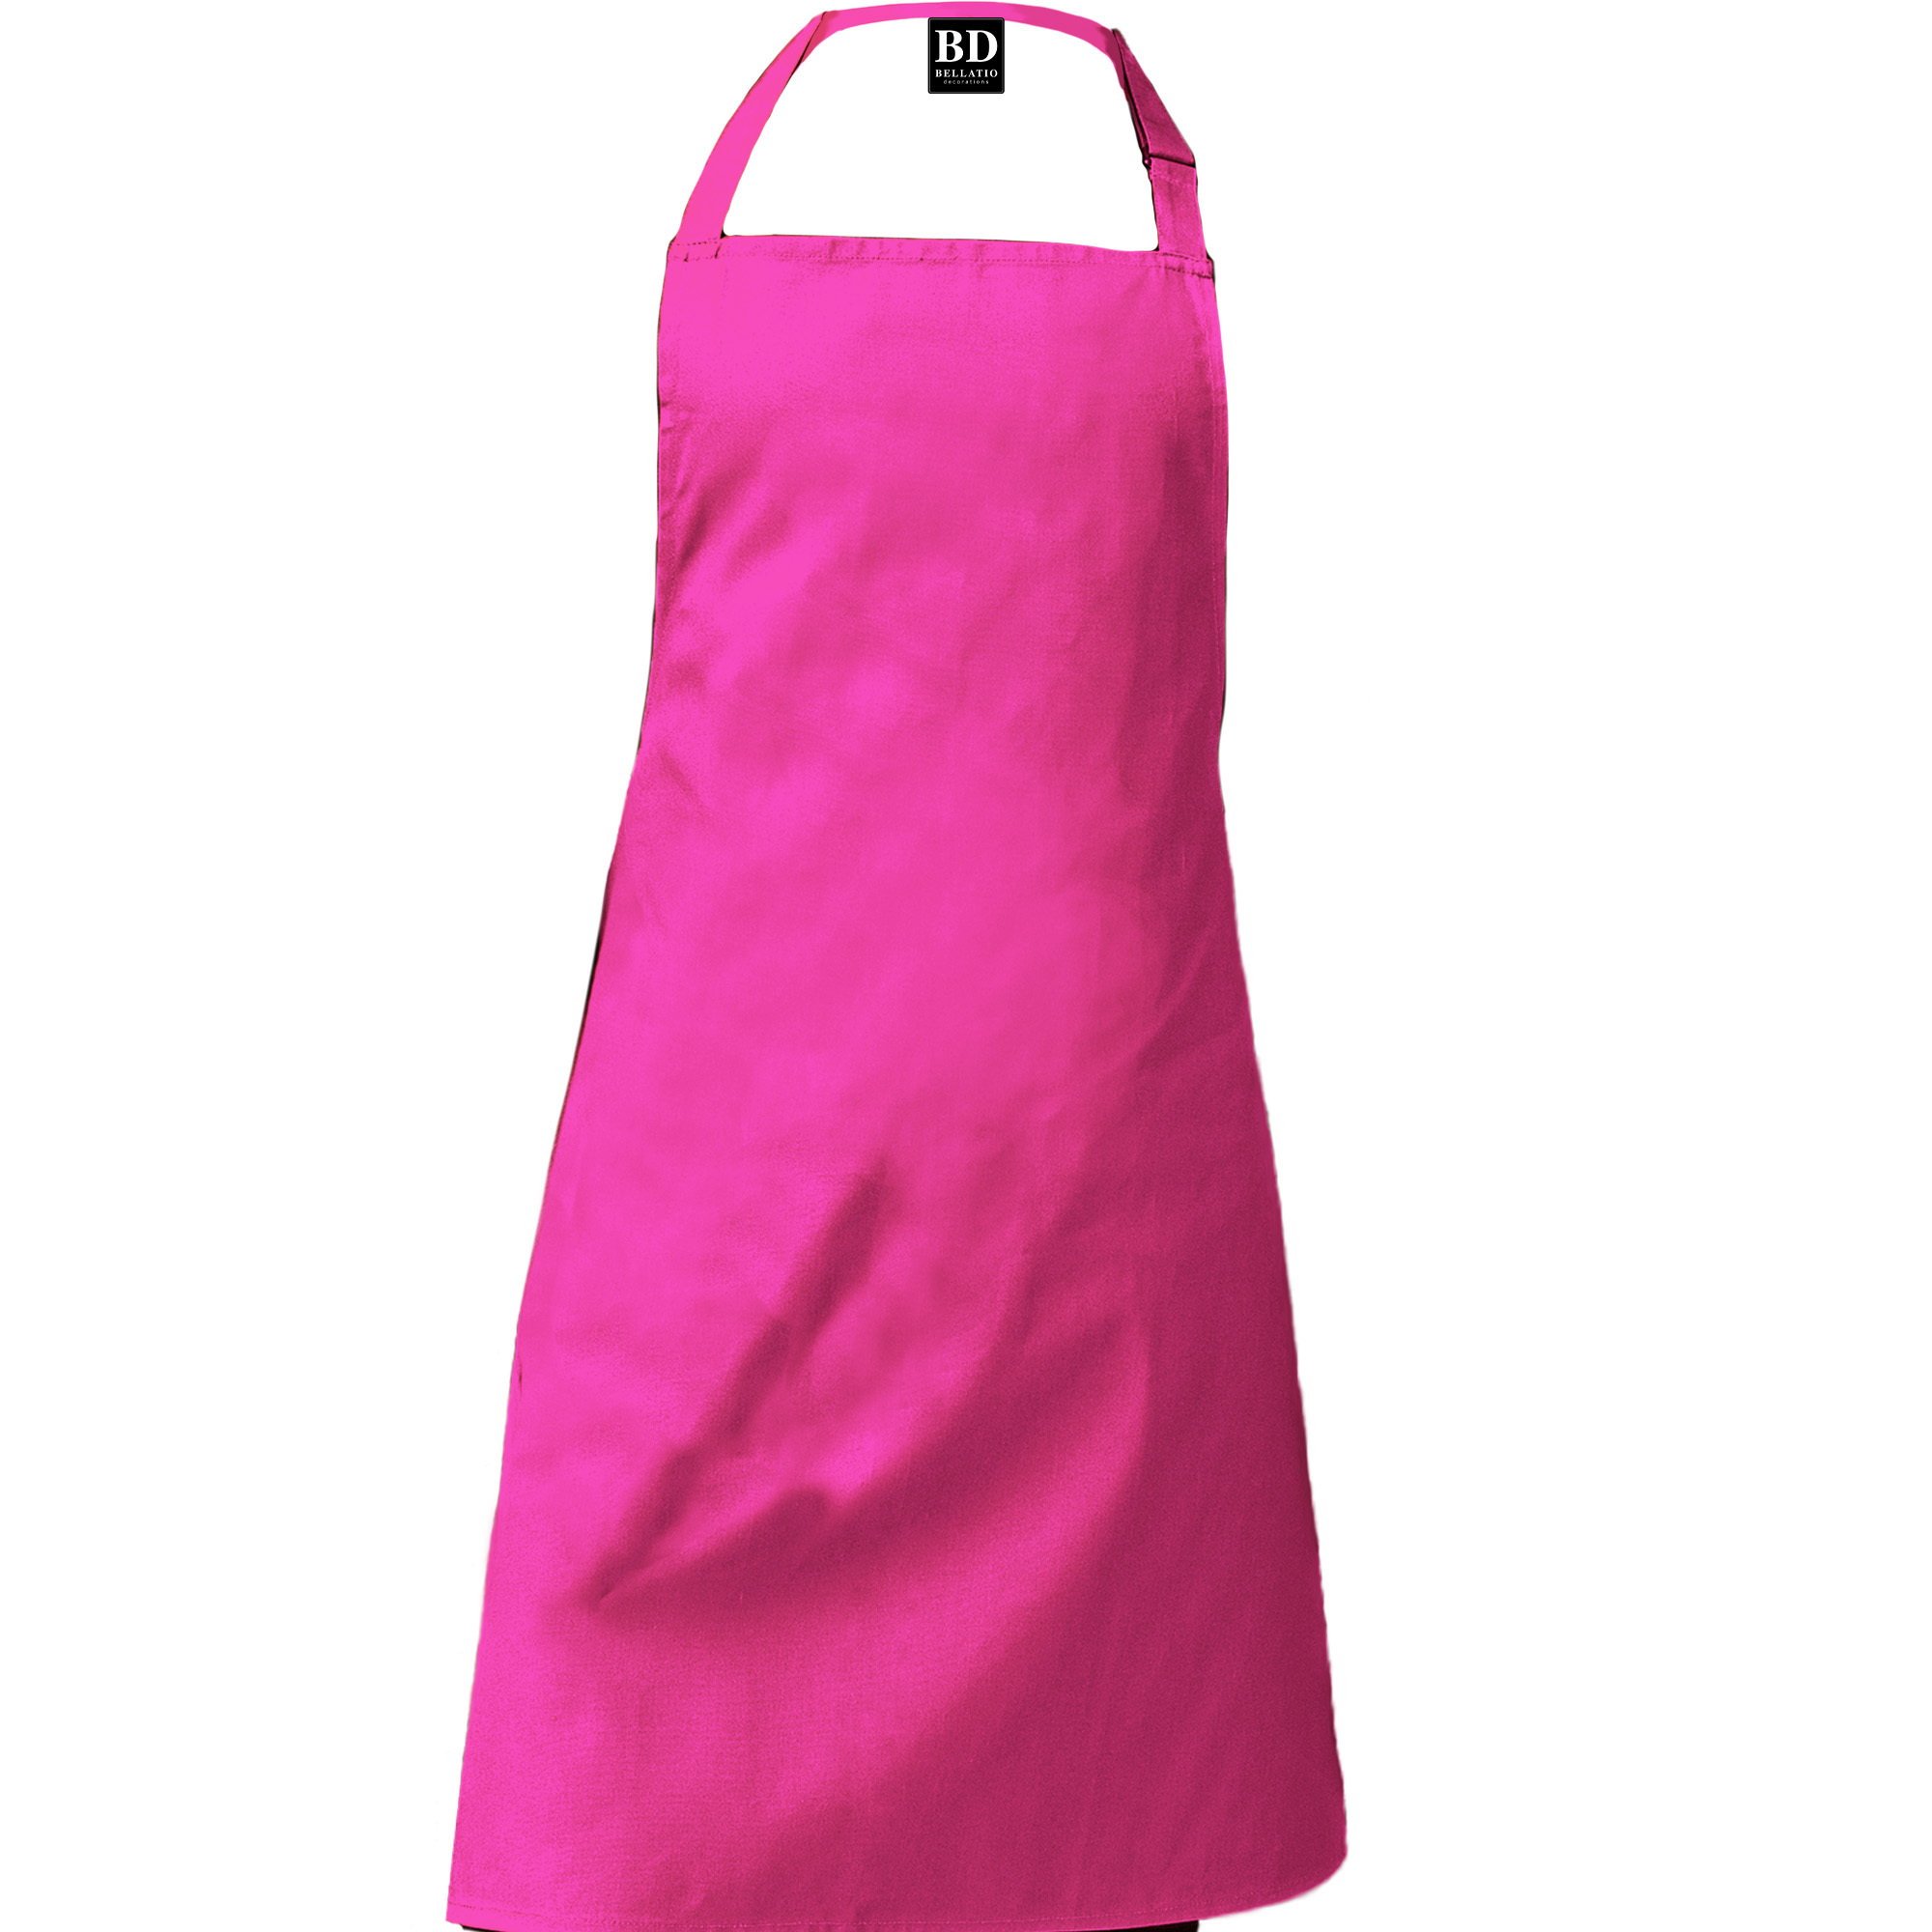 Keuken koningin apron pink Ladies / Mothers day